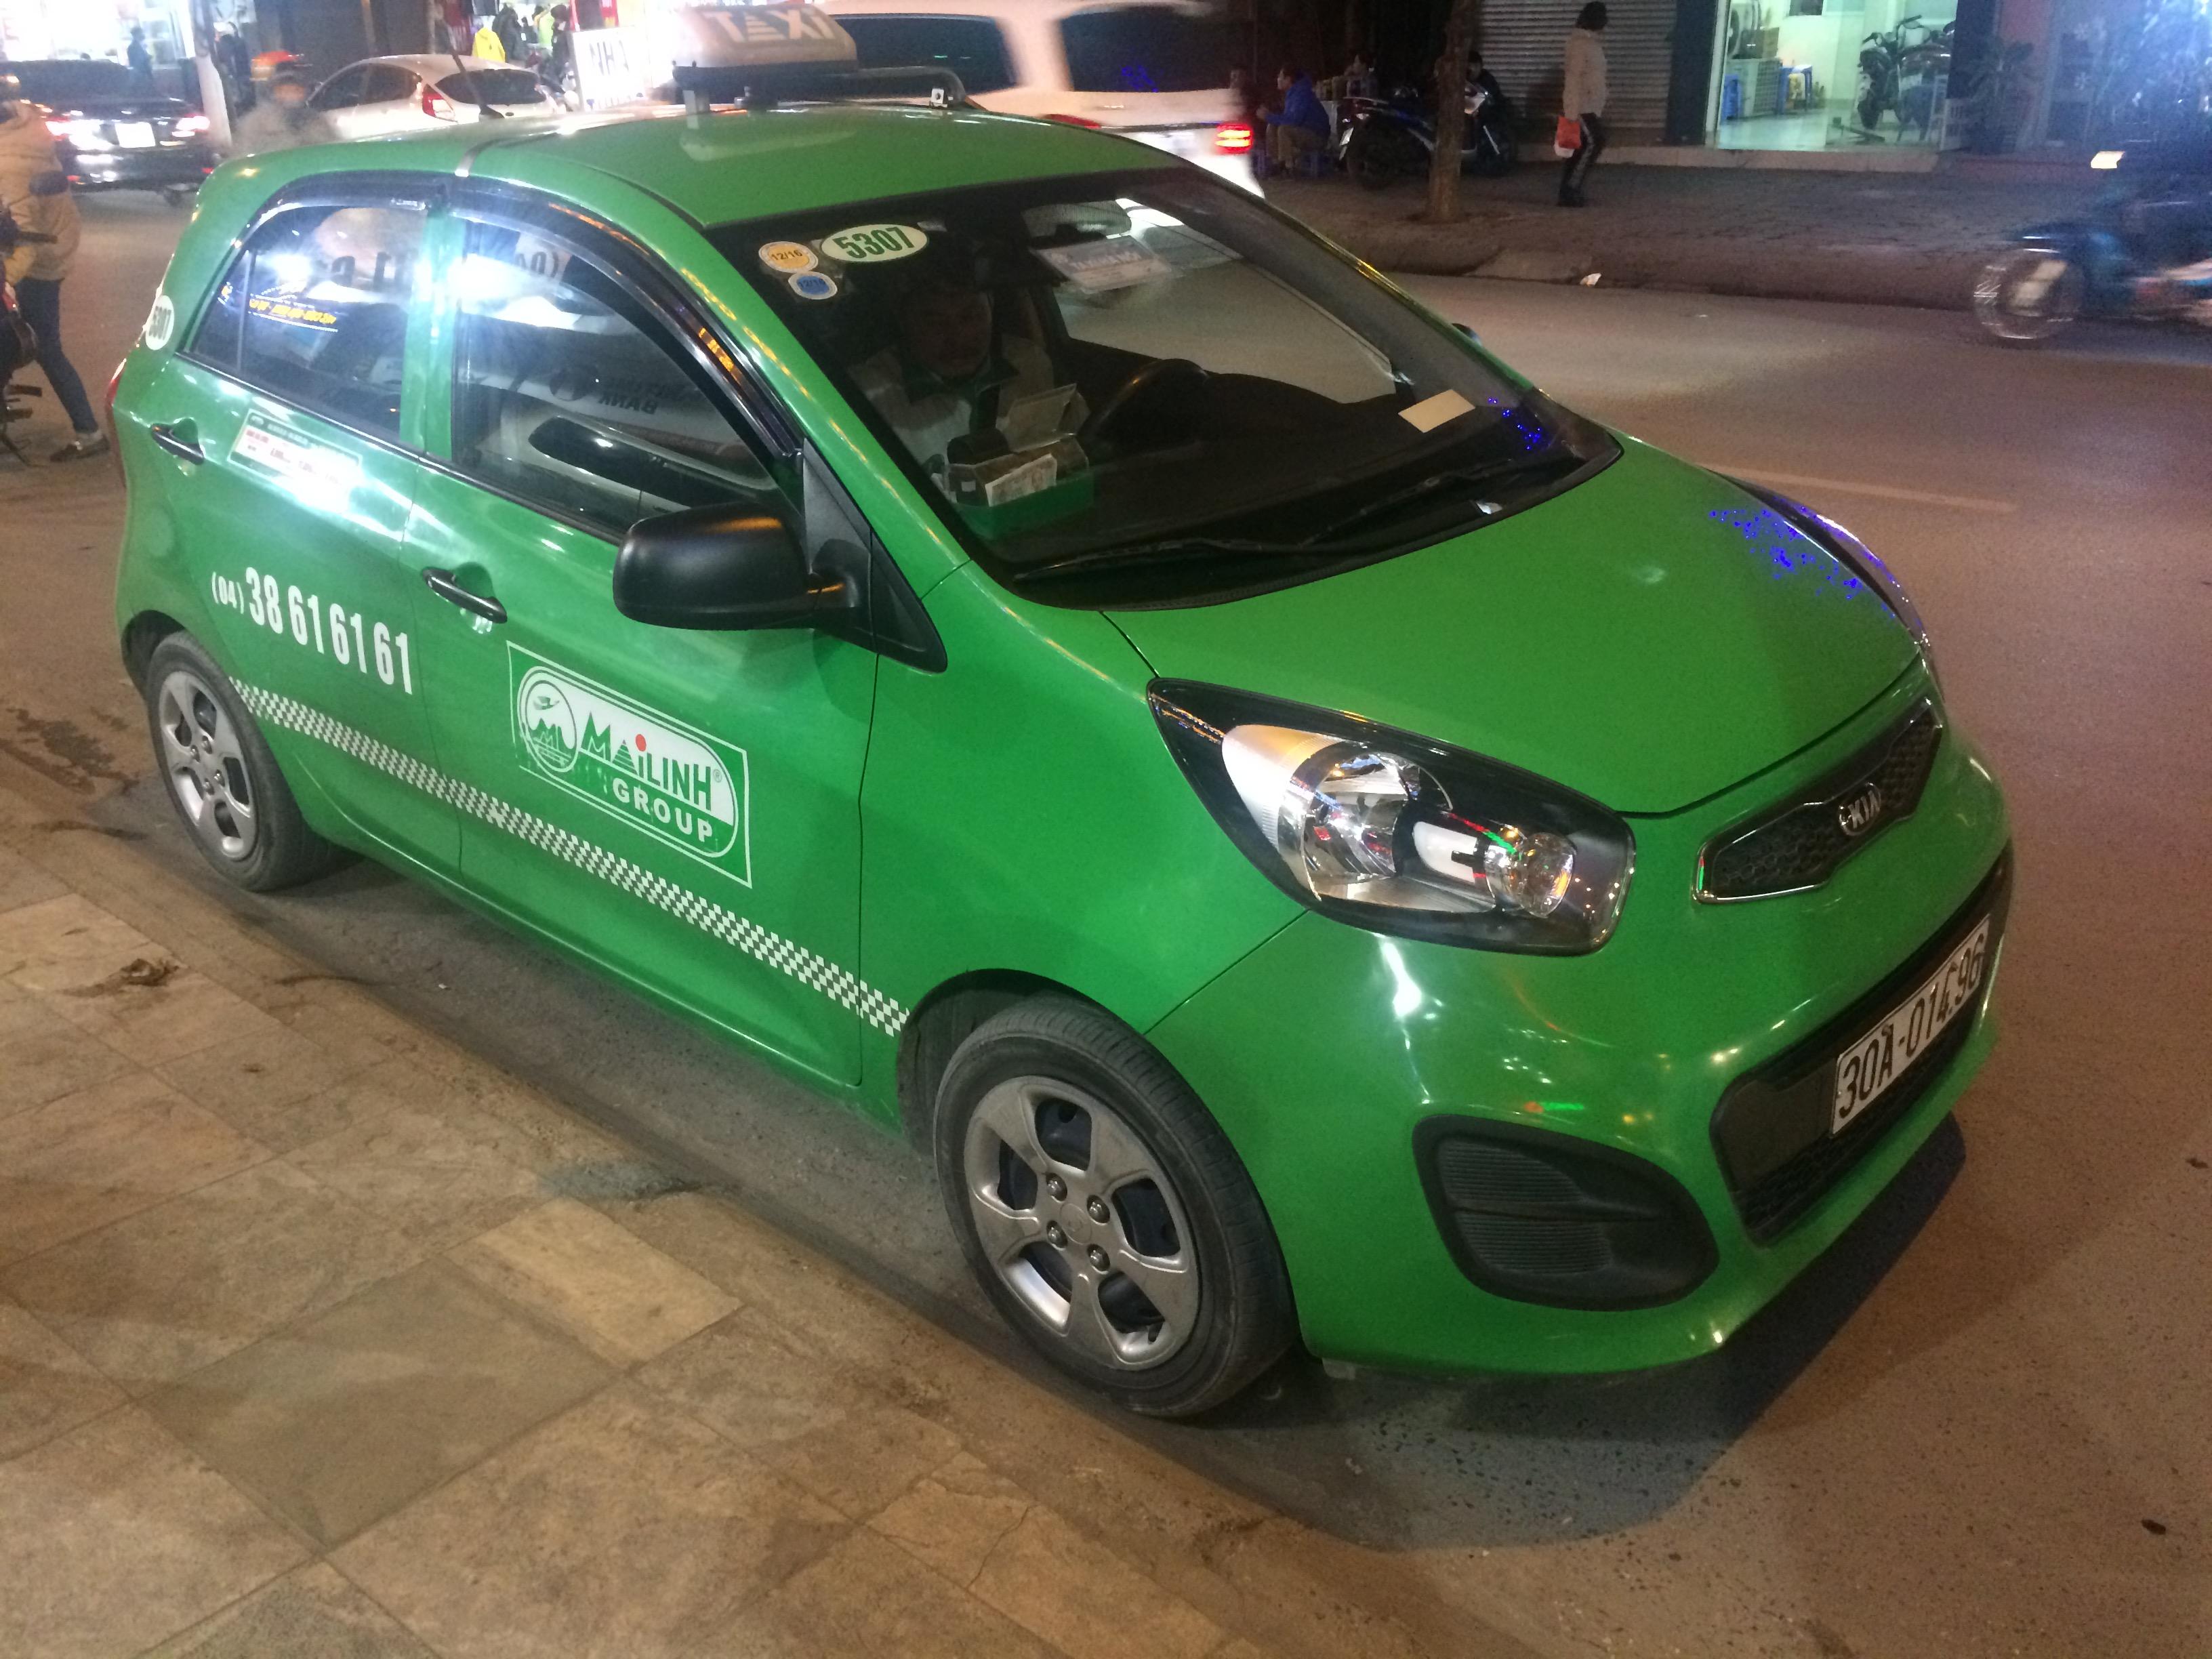 越南VinFast正在研发电动汽车 将于2021年通过进口打入美国市场_搜狐汽车_搜狐网